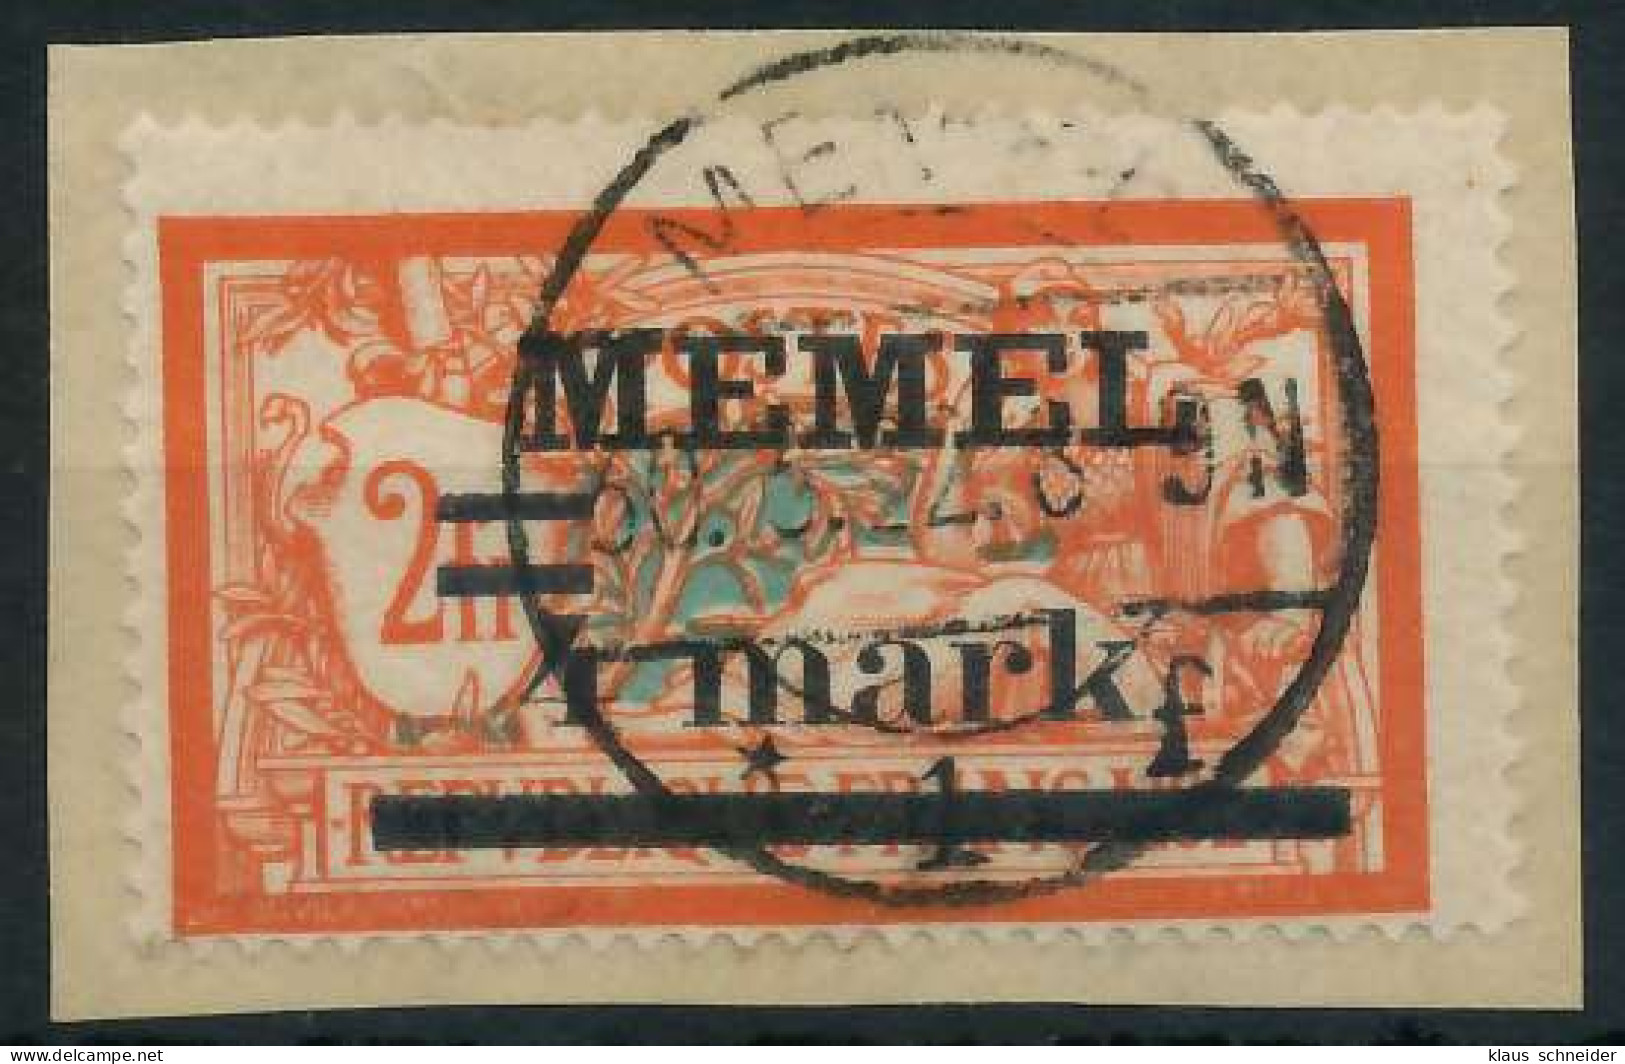 MEMEL 1920 Nr 31 Iy BRIEF X447826 - Memelgebiet 1923